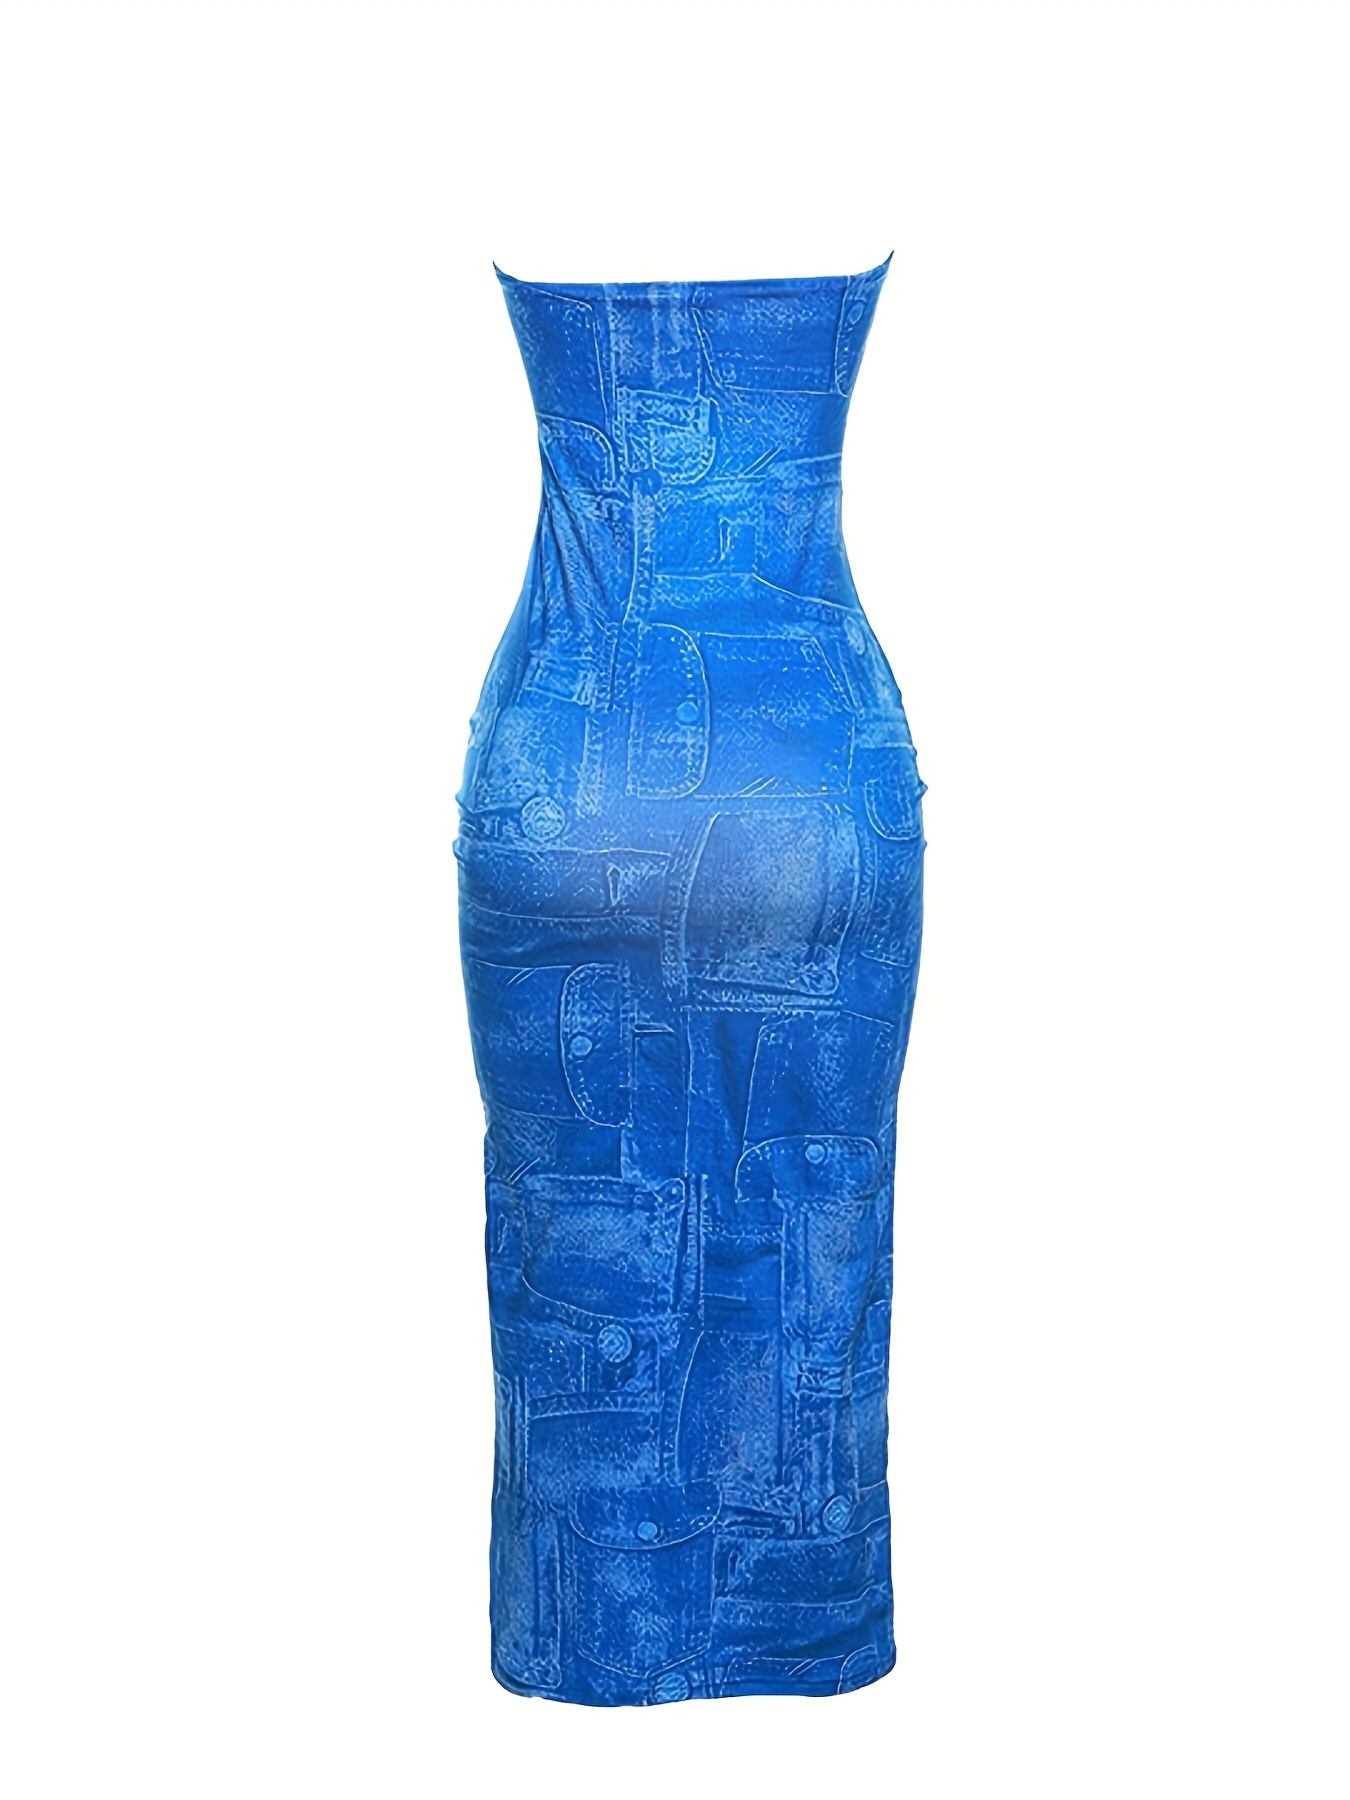 Women's Strapless Backless Maxi Dress - Blue